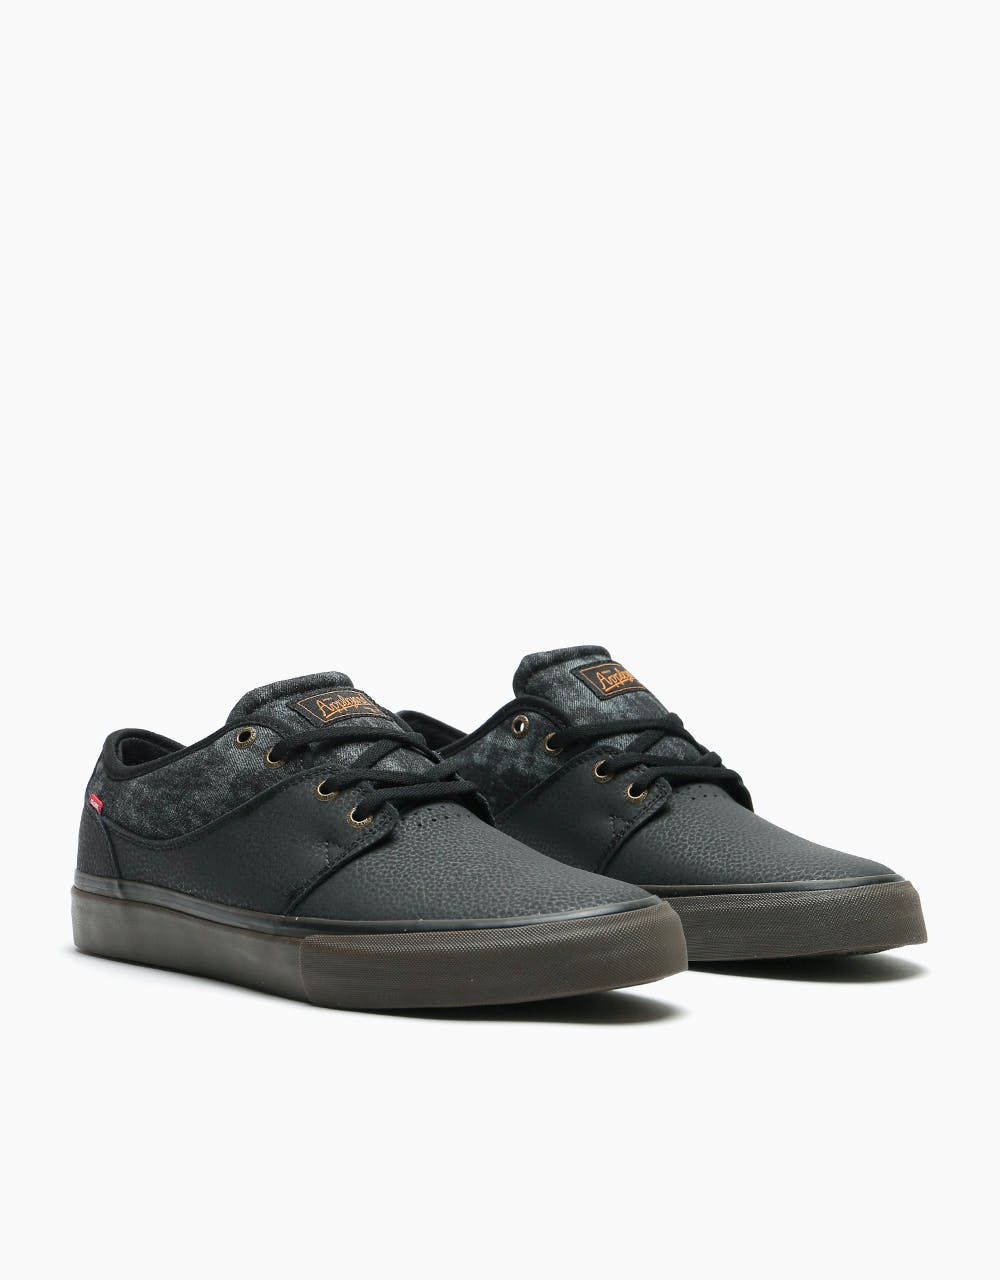 Globe Mahalo Skate Shoes - Black/Denim/Gum